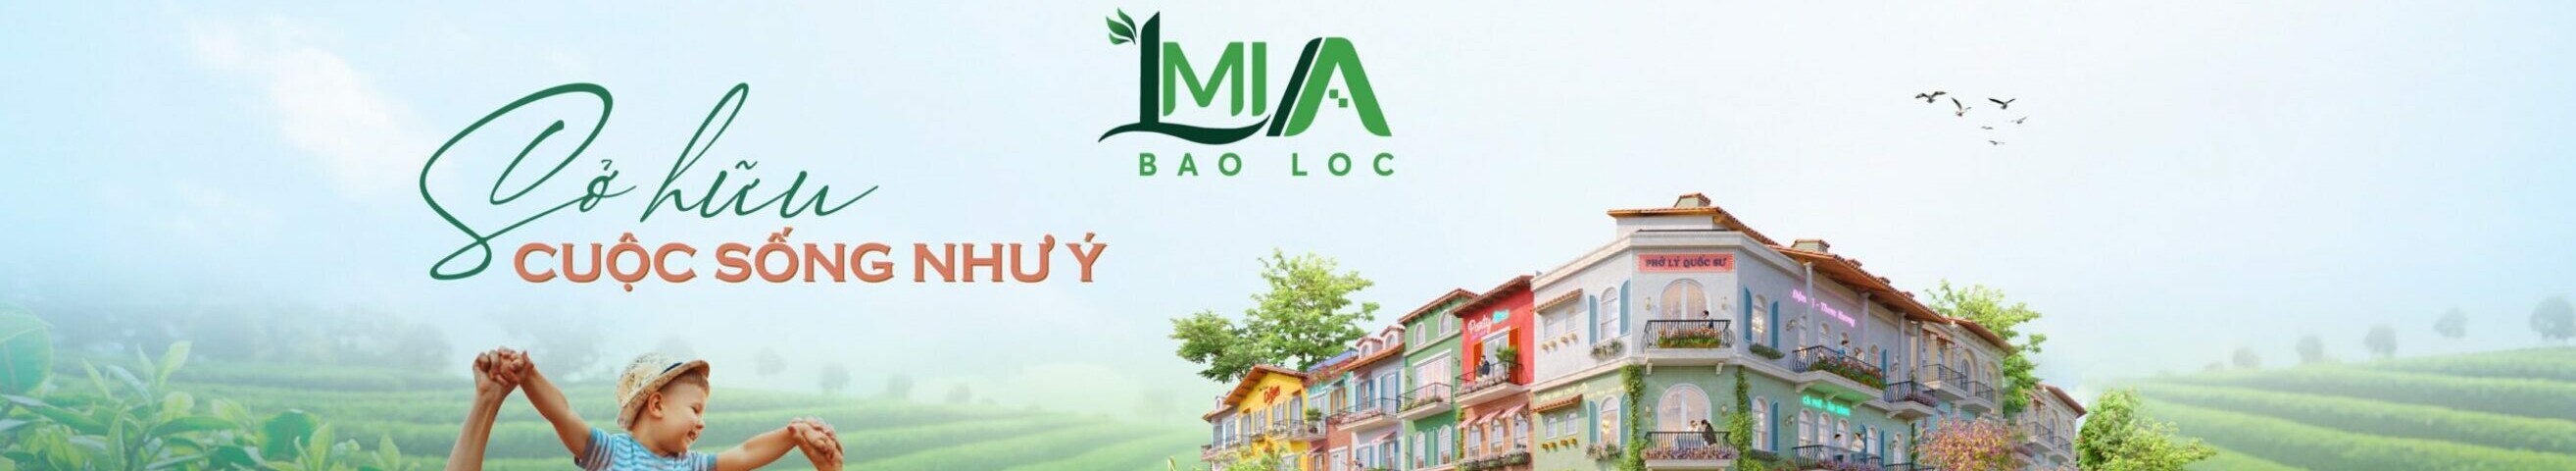 обложка автора La Mia Bảo Lộc City